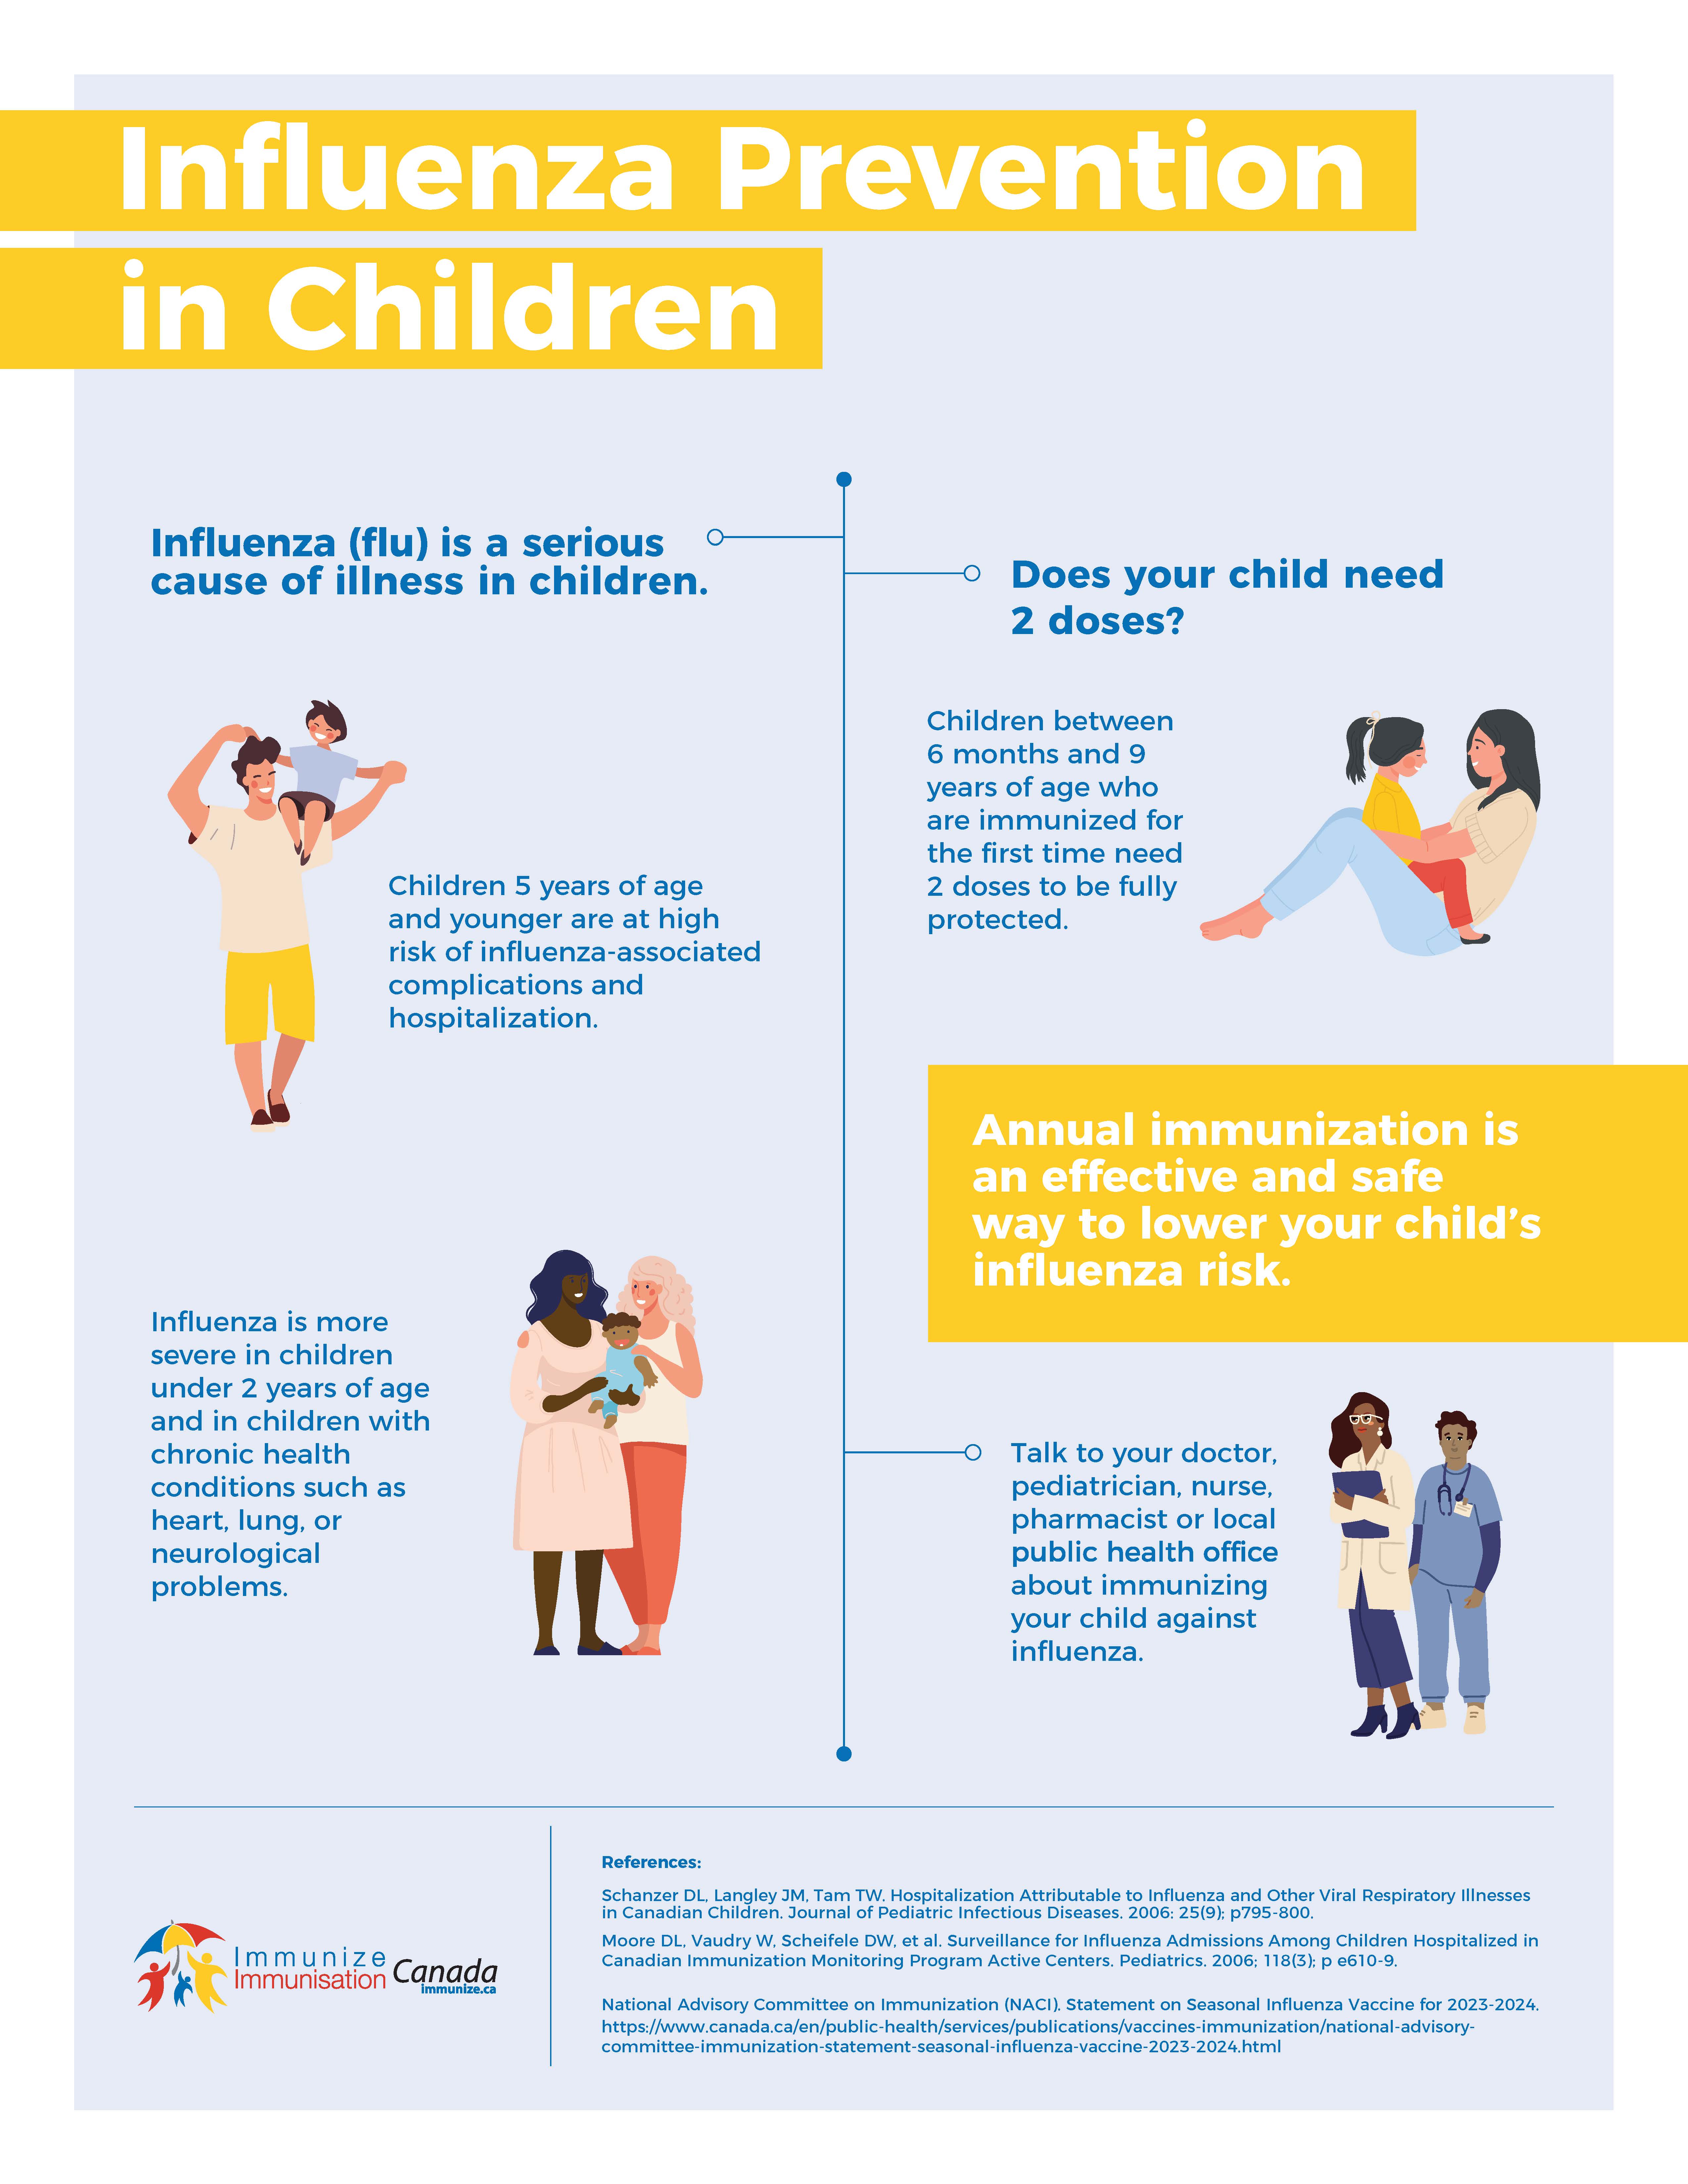 Influenza prevention in children - infographic